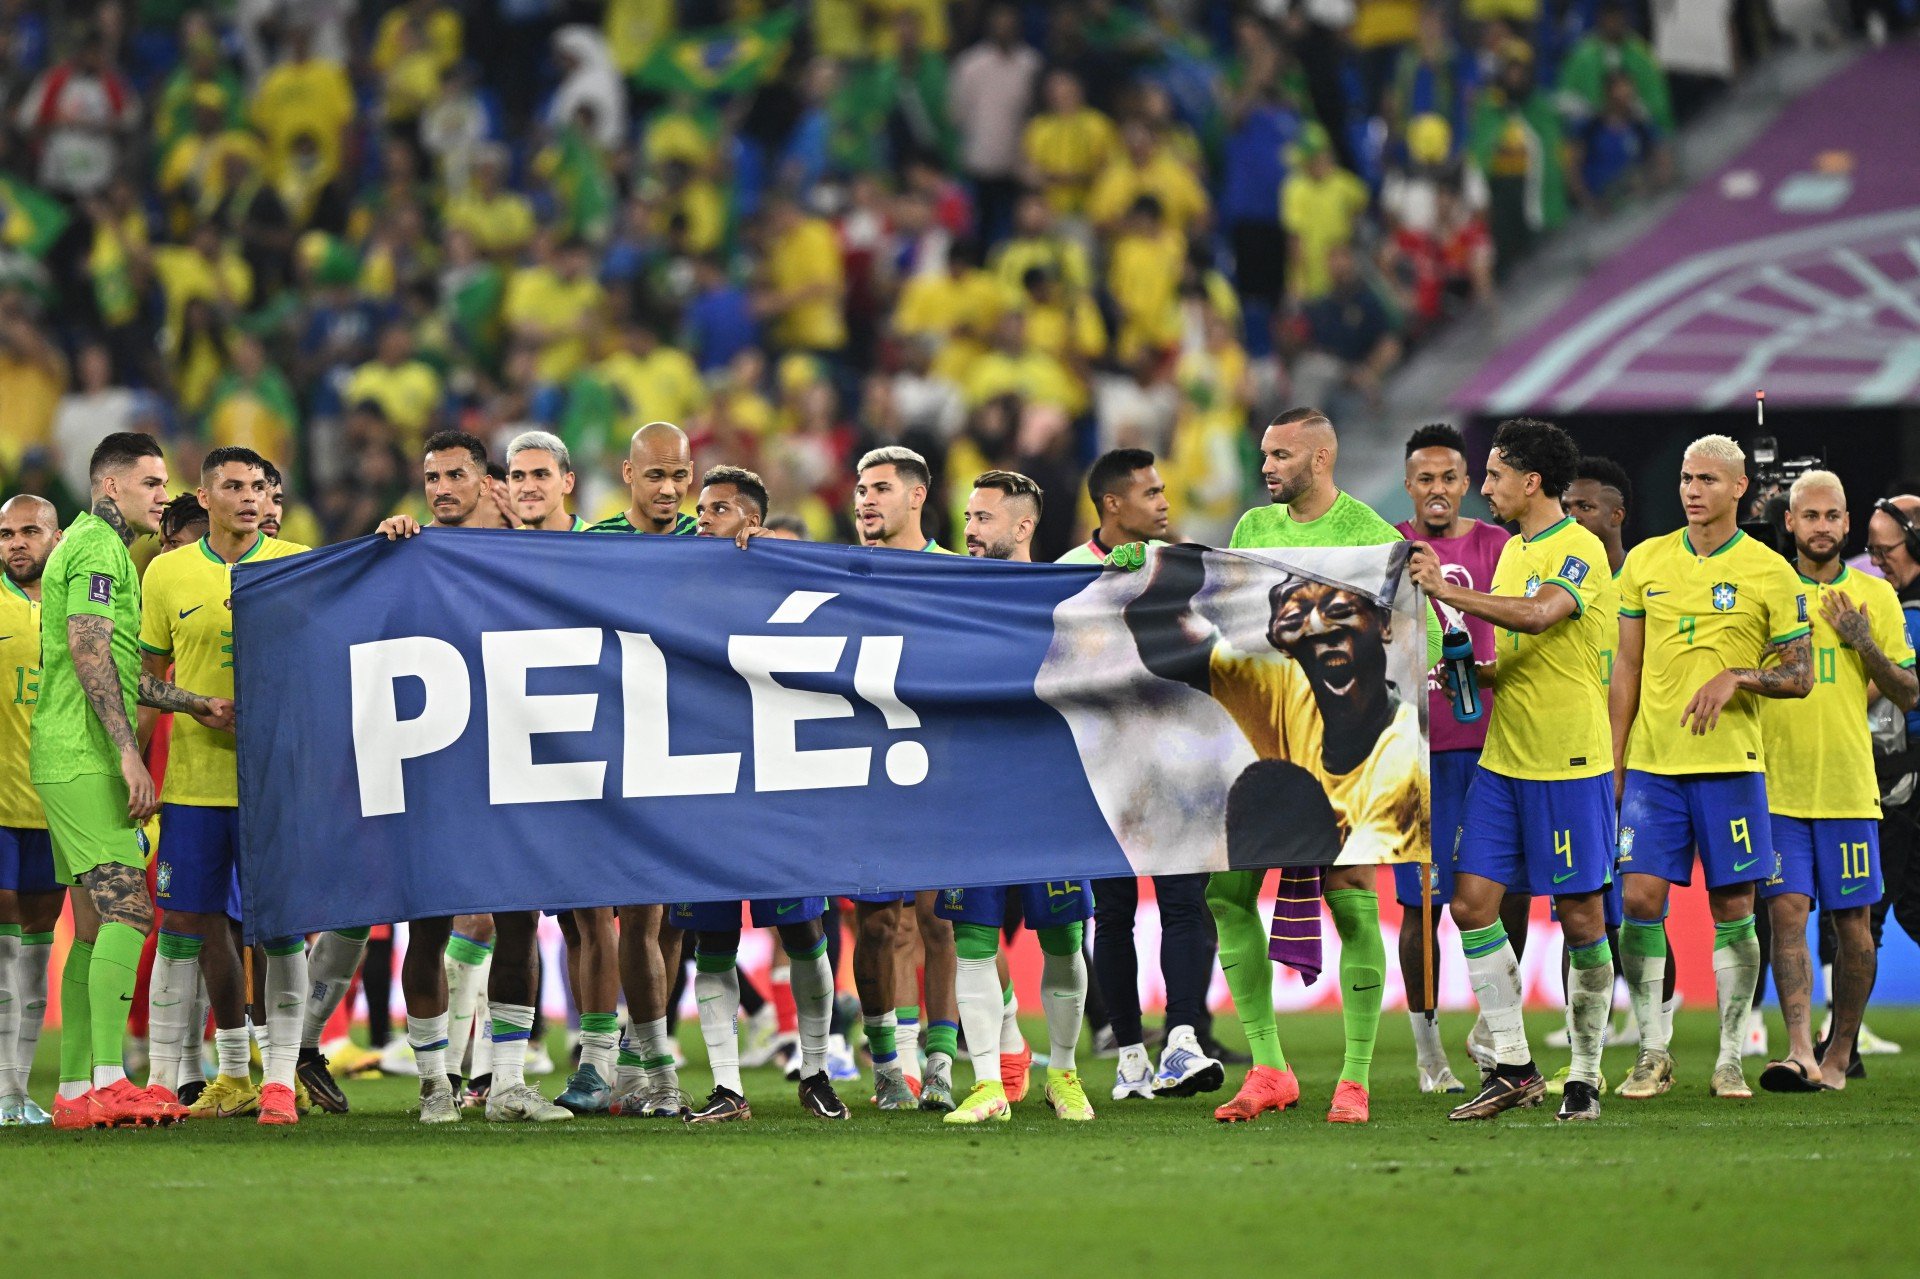 Craques do Brasil estenderam faixa em homenagem a Pelé, que está internado  - MANAN VATSYAYANA / AFP